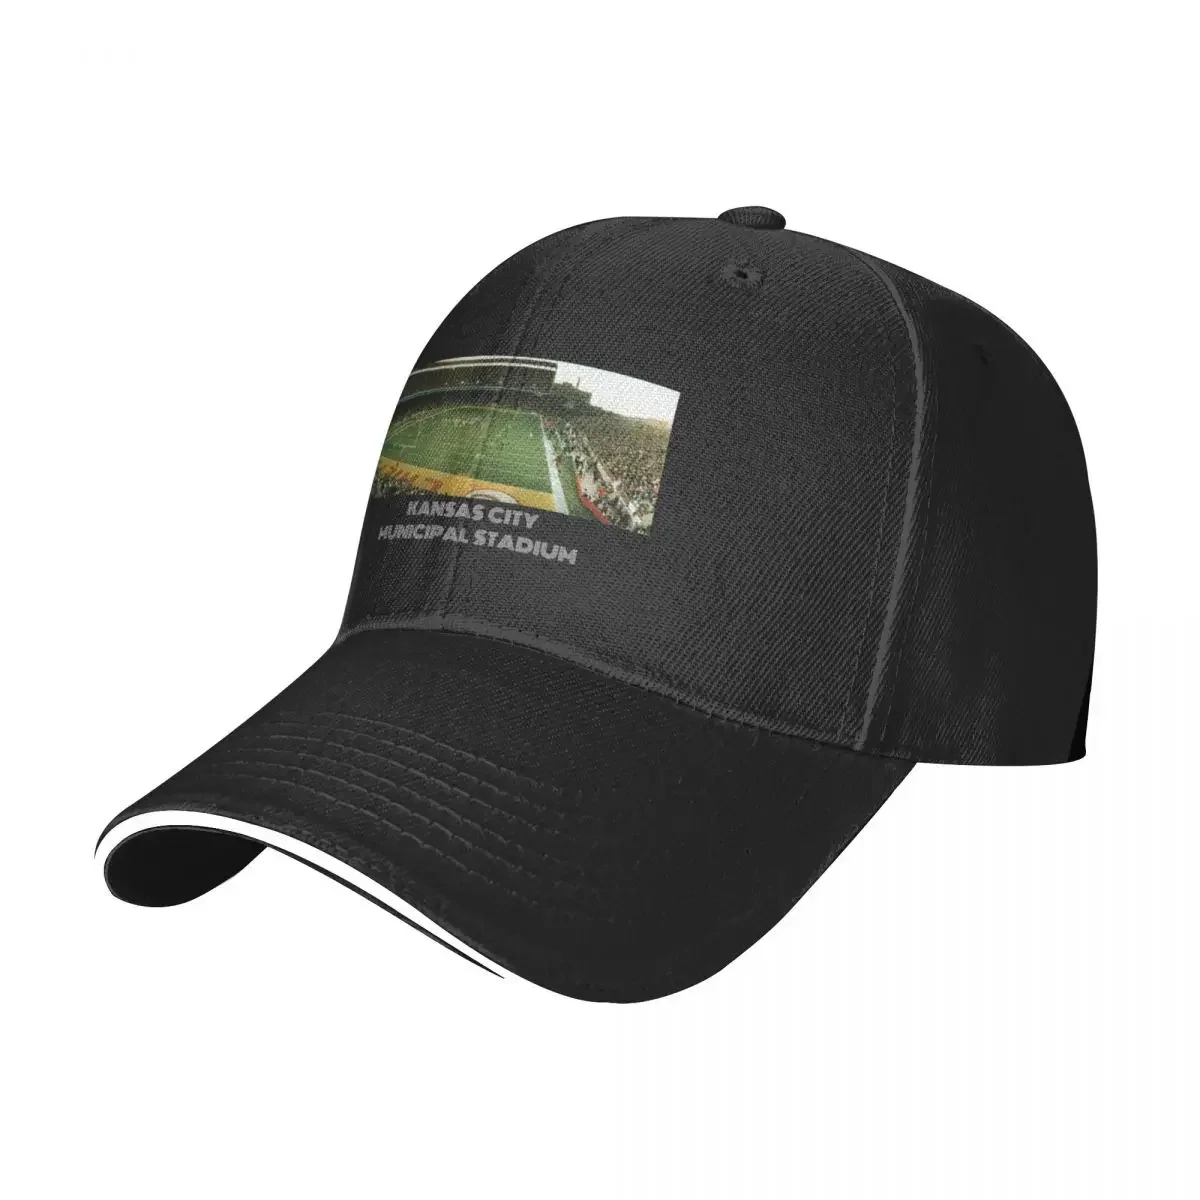 

Бейсболка для муниципального стадиона Канзас-Сити, кепка для джентльмена, Мужская кепка для гольфа, женская кепка для гольфа